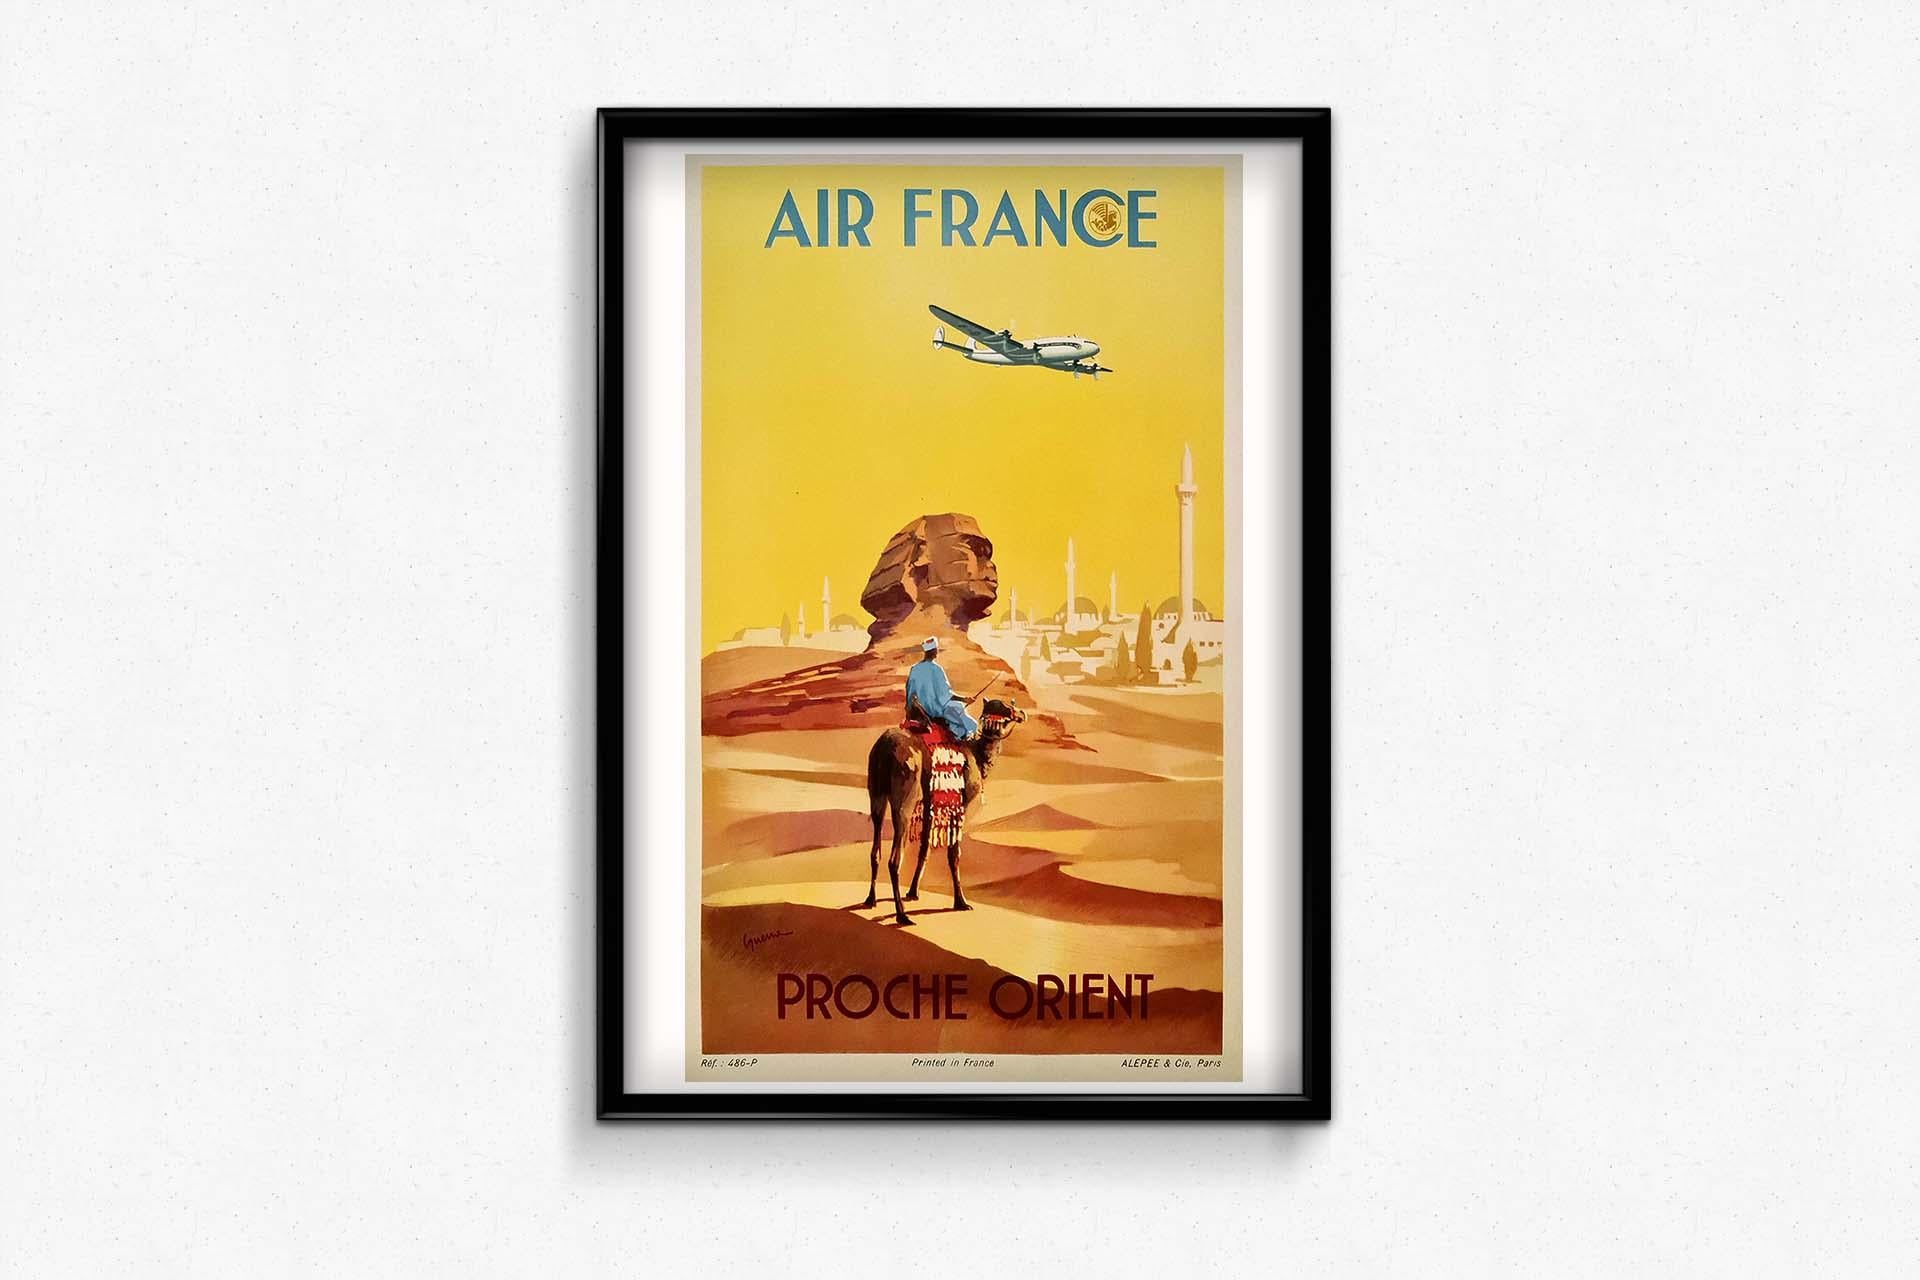 Original-Reiseplakat, 1948 von Air France für Ziele im Nahen Osten hergestellt. Wir können eine Konstellationsebene sehen, die über die Sphinx von Gizeh fliegt.

Fluggesellschaft - Luftfahrt - Tourismus

Ägypten - Sphinx

Alépée & Cie Paris